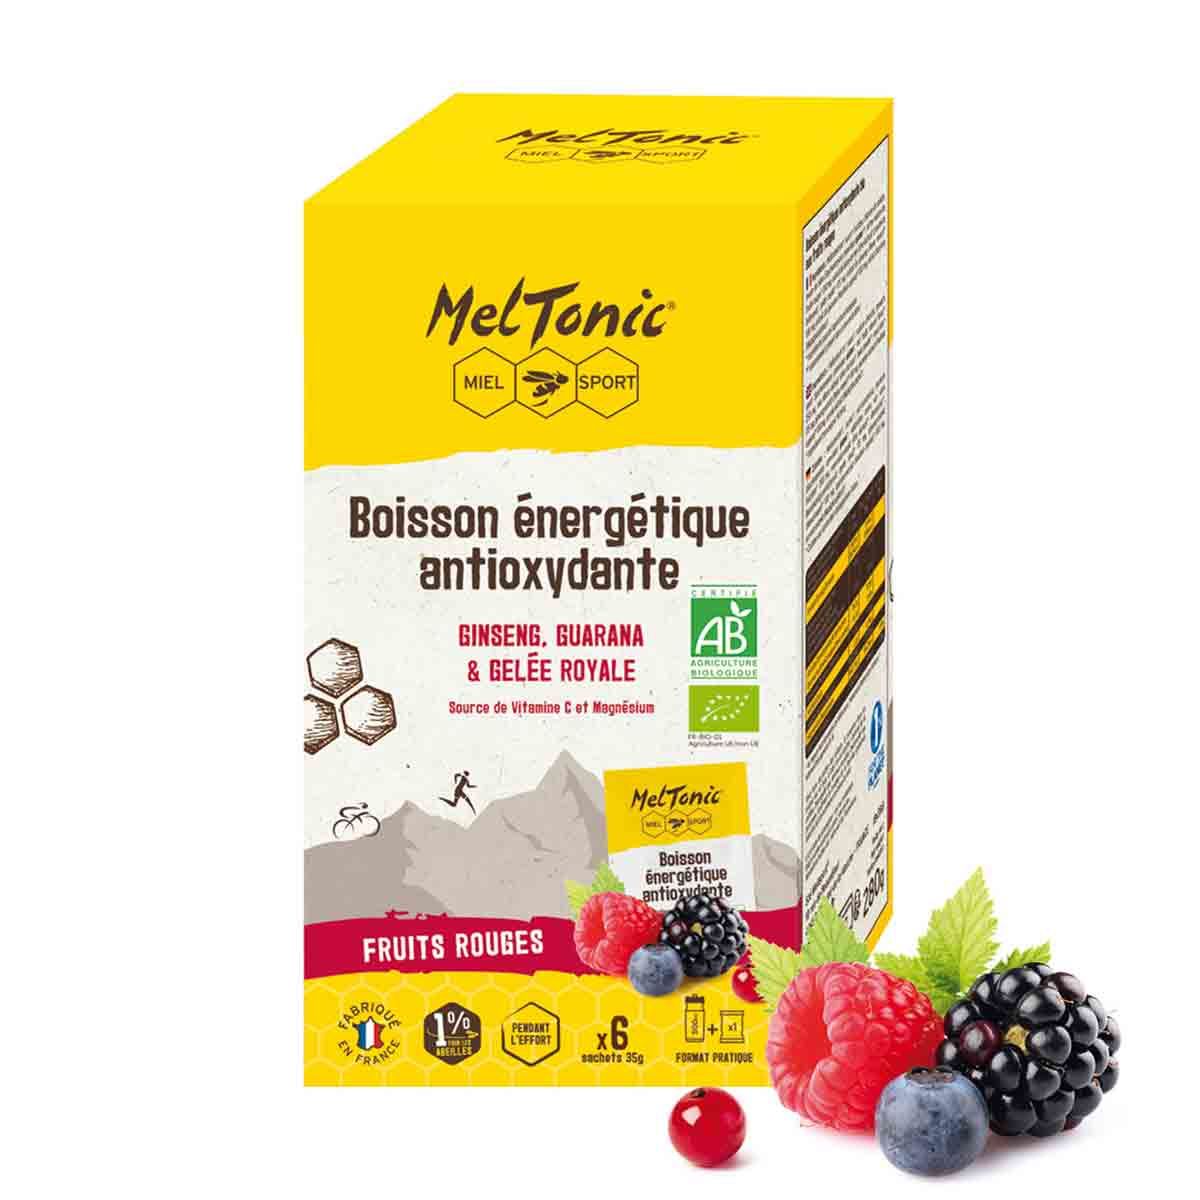 Boisson énergétique antioxydante bio Meltonic x 6 sticks - Fruits rouges